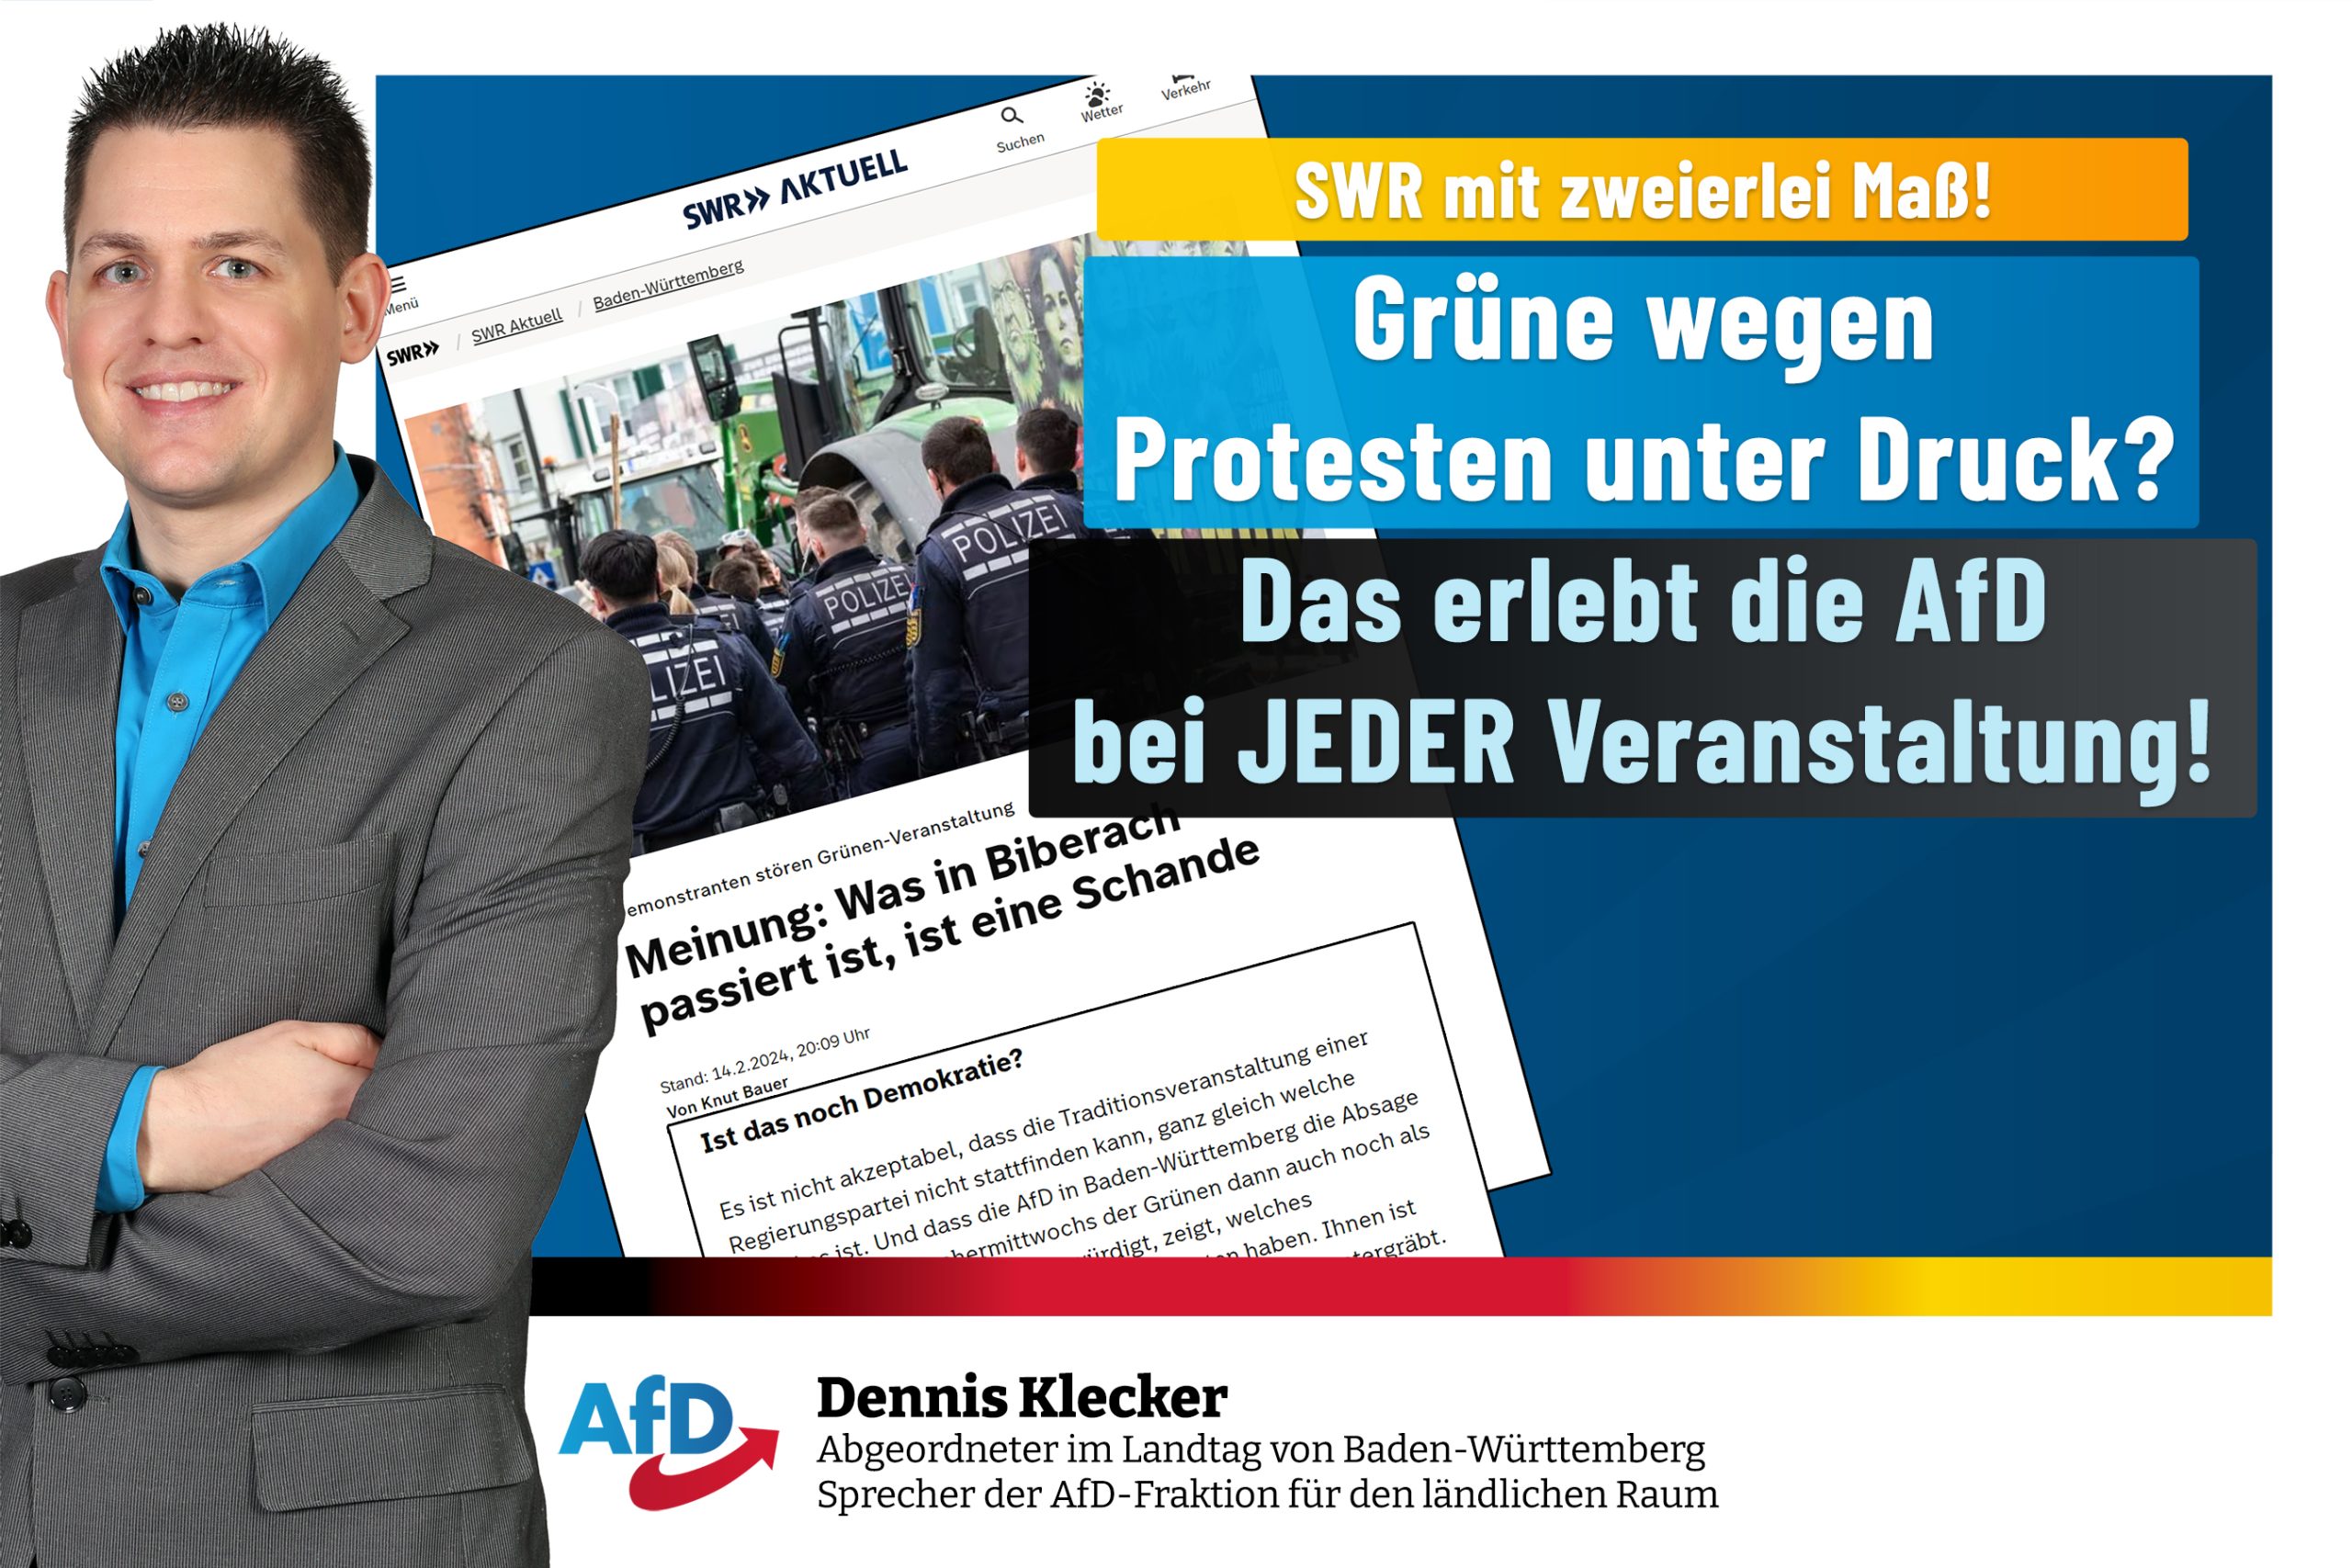 Dennis Klecker: SWR-Kommentar zu Biberach völlig inakzeptabel!